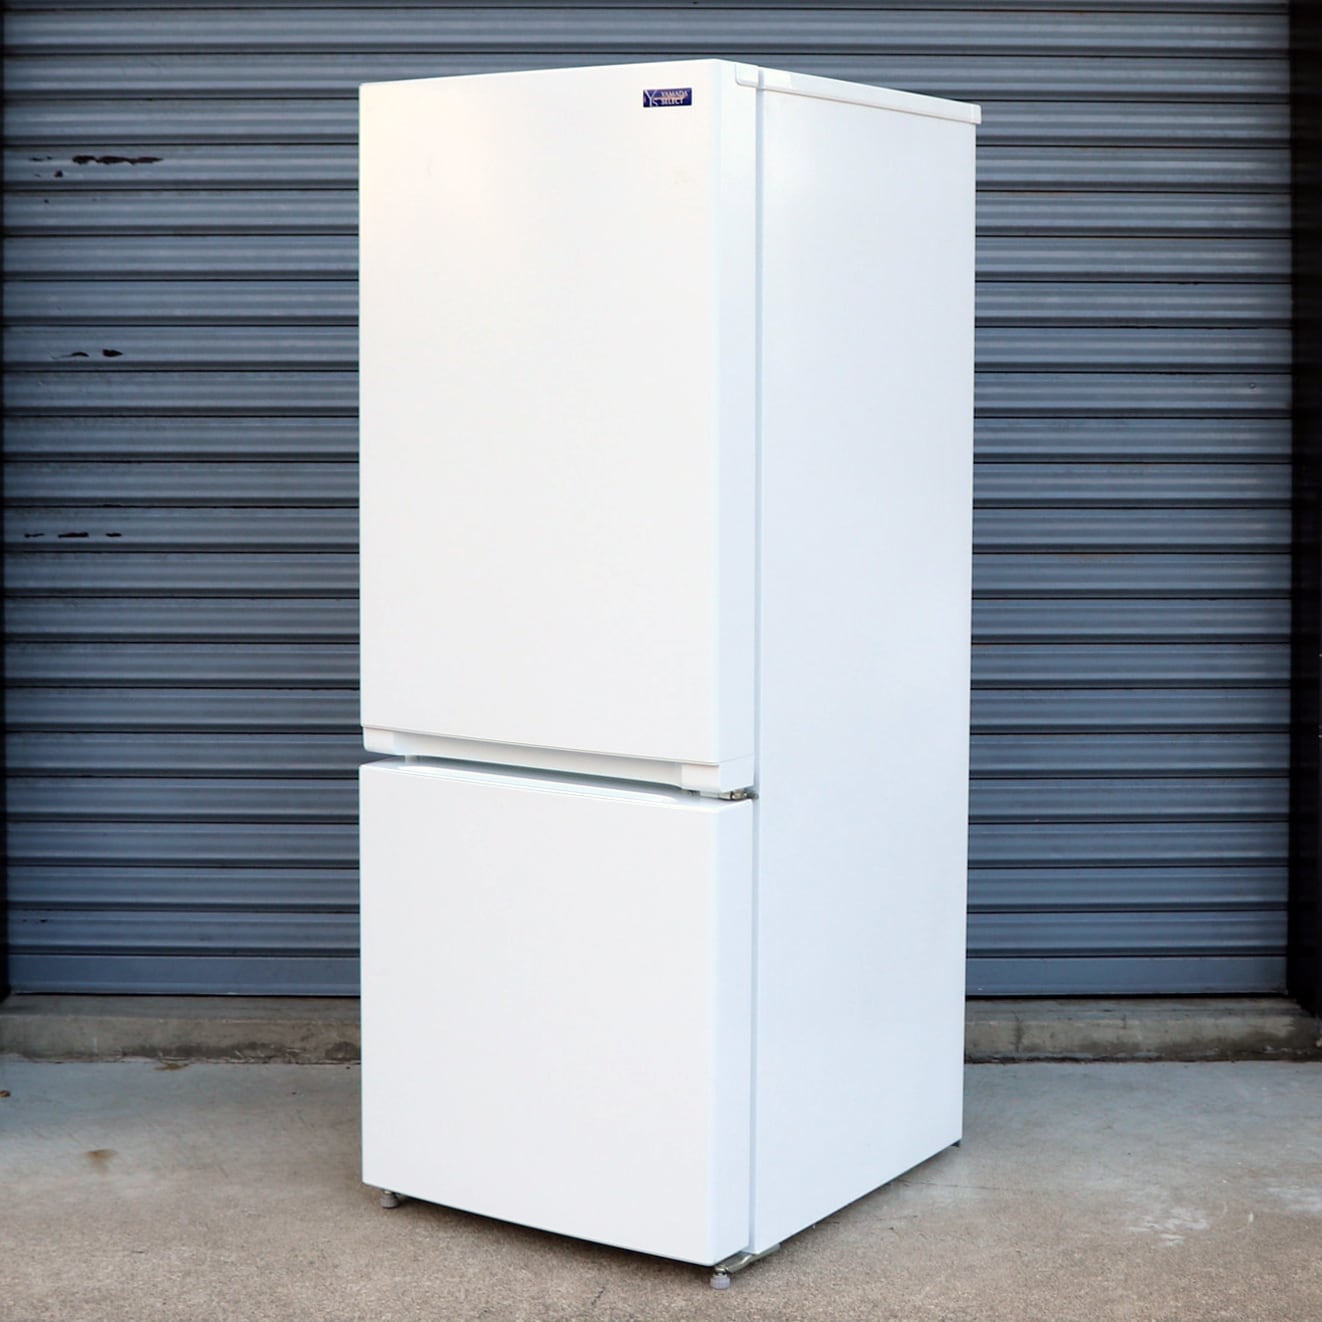 YAMADA・ヤマダ電機156L・2ドア・冷凍冷蔵庫・YRZ-F15G1・2020年製・No.200708-623・佐川急便260 |  リサイクルショップ宝さがし